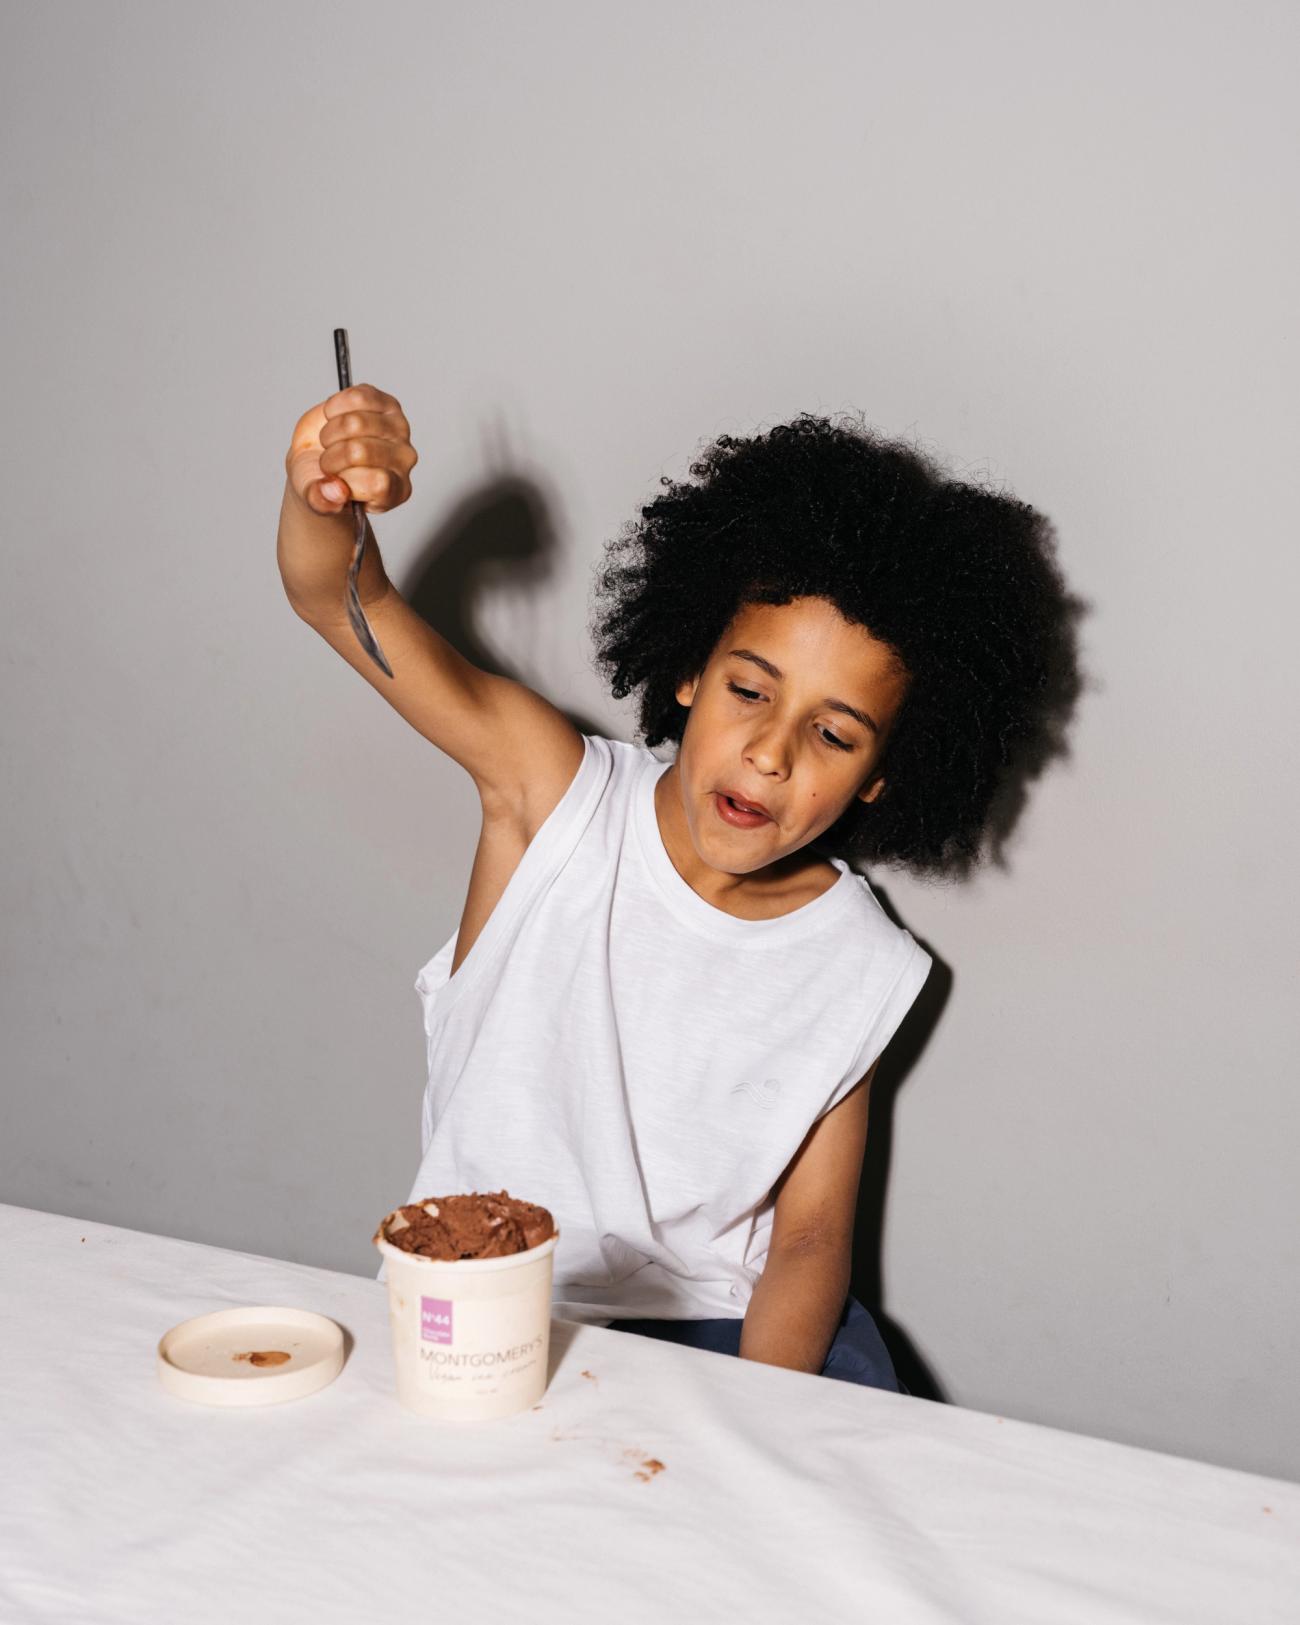  A boy eating icecream